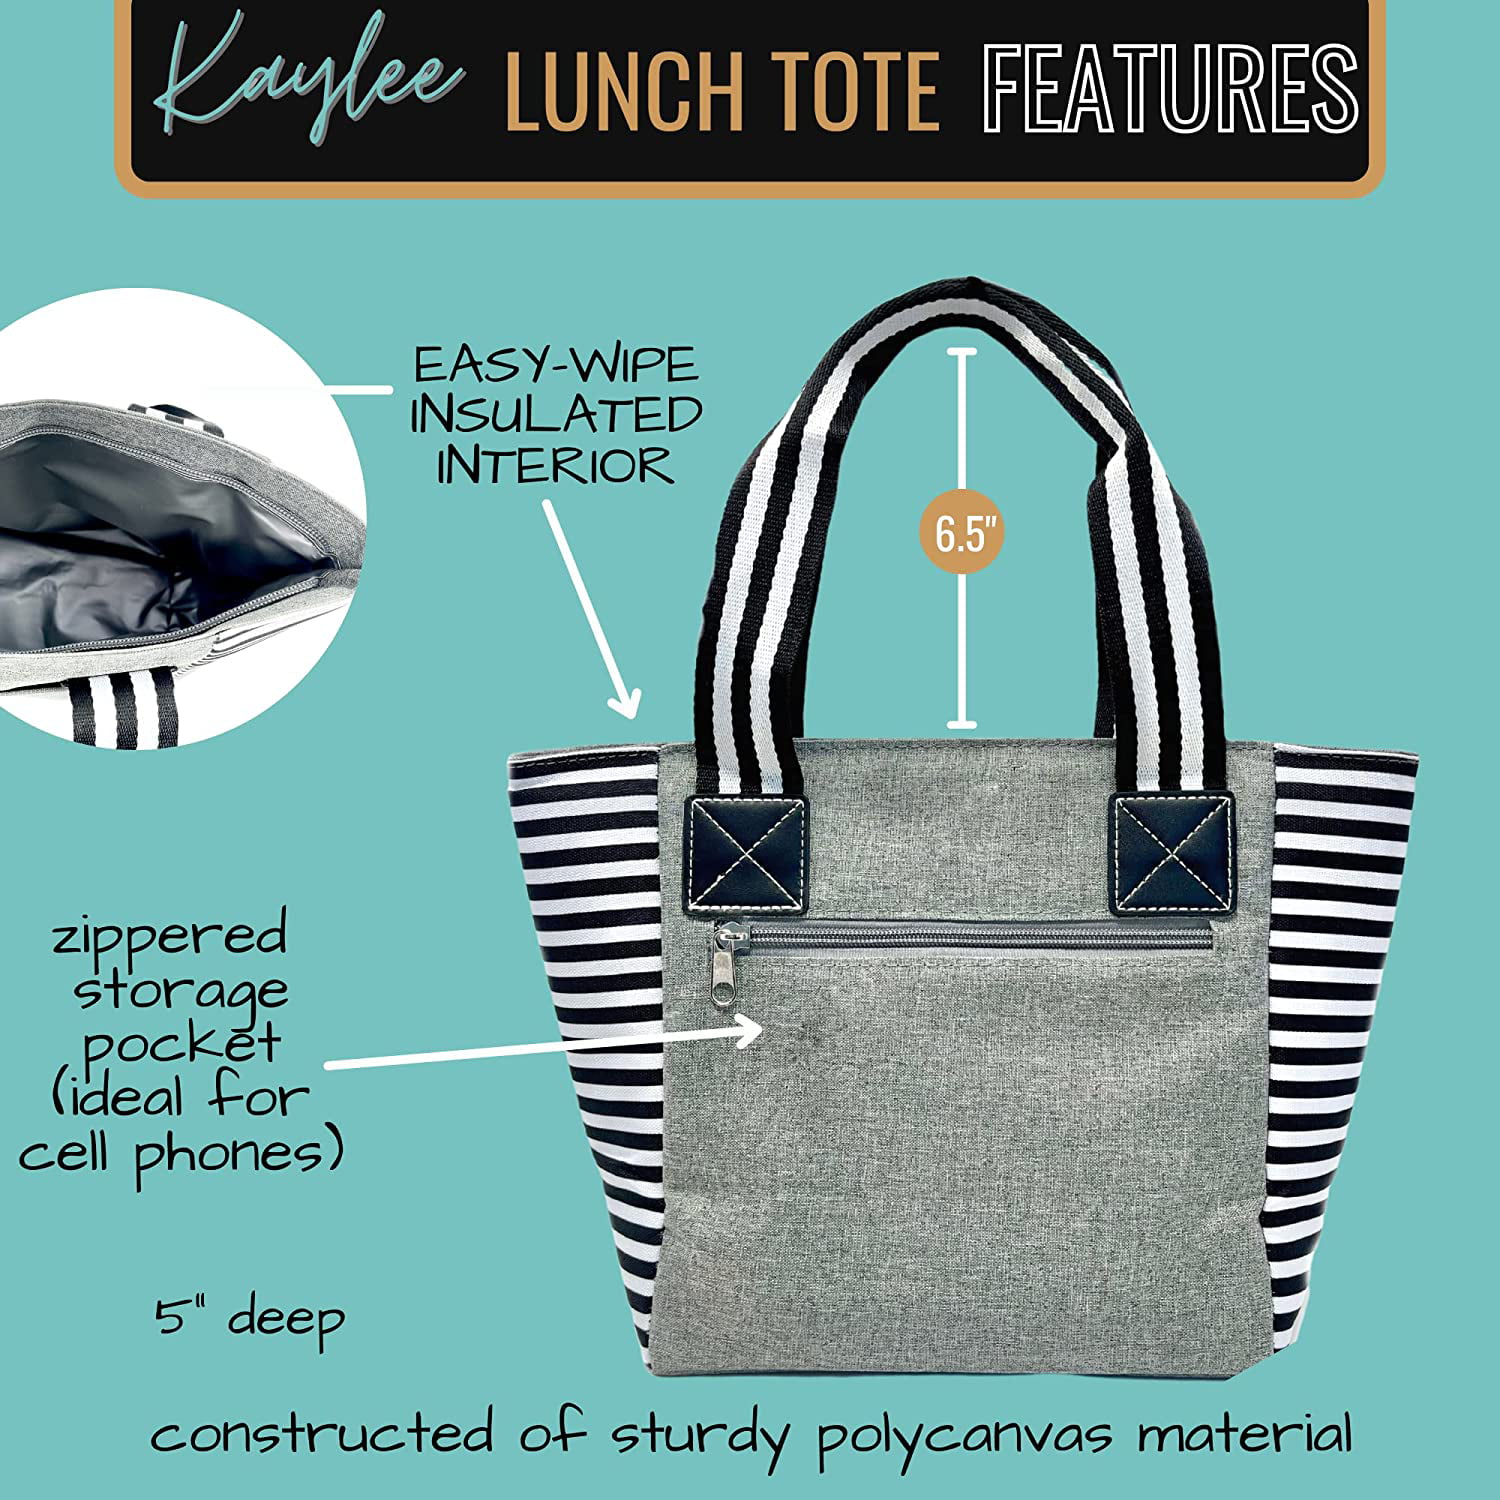 The Best Teacher Lunch Bags, as Chosen by Educators - WeAreTeachers